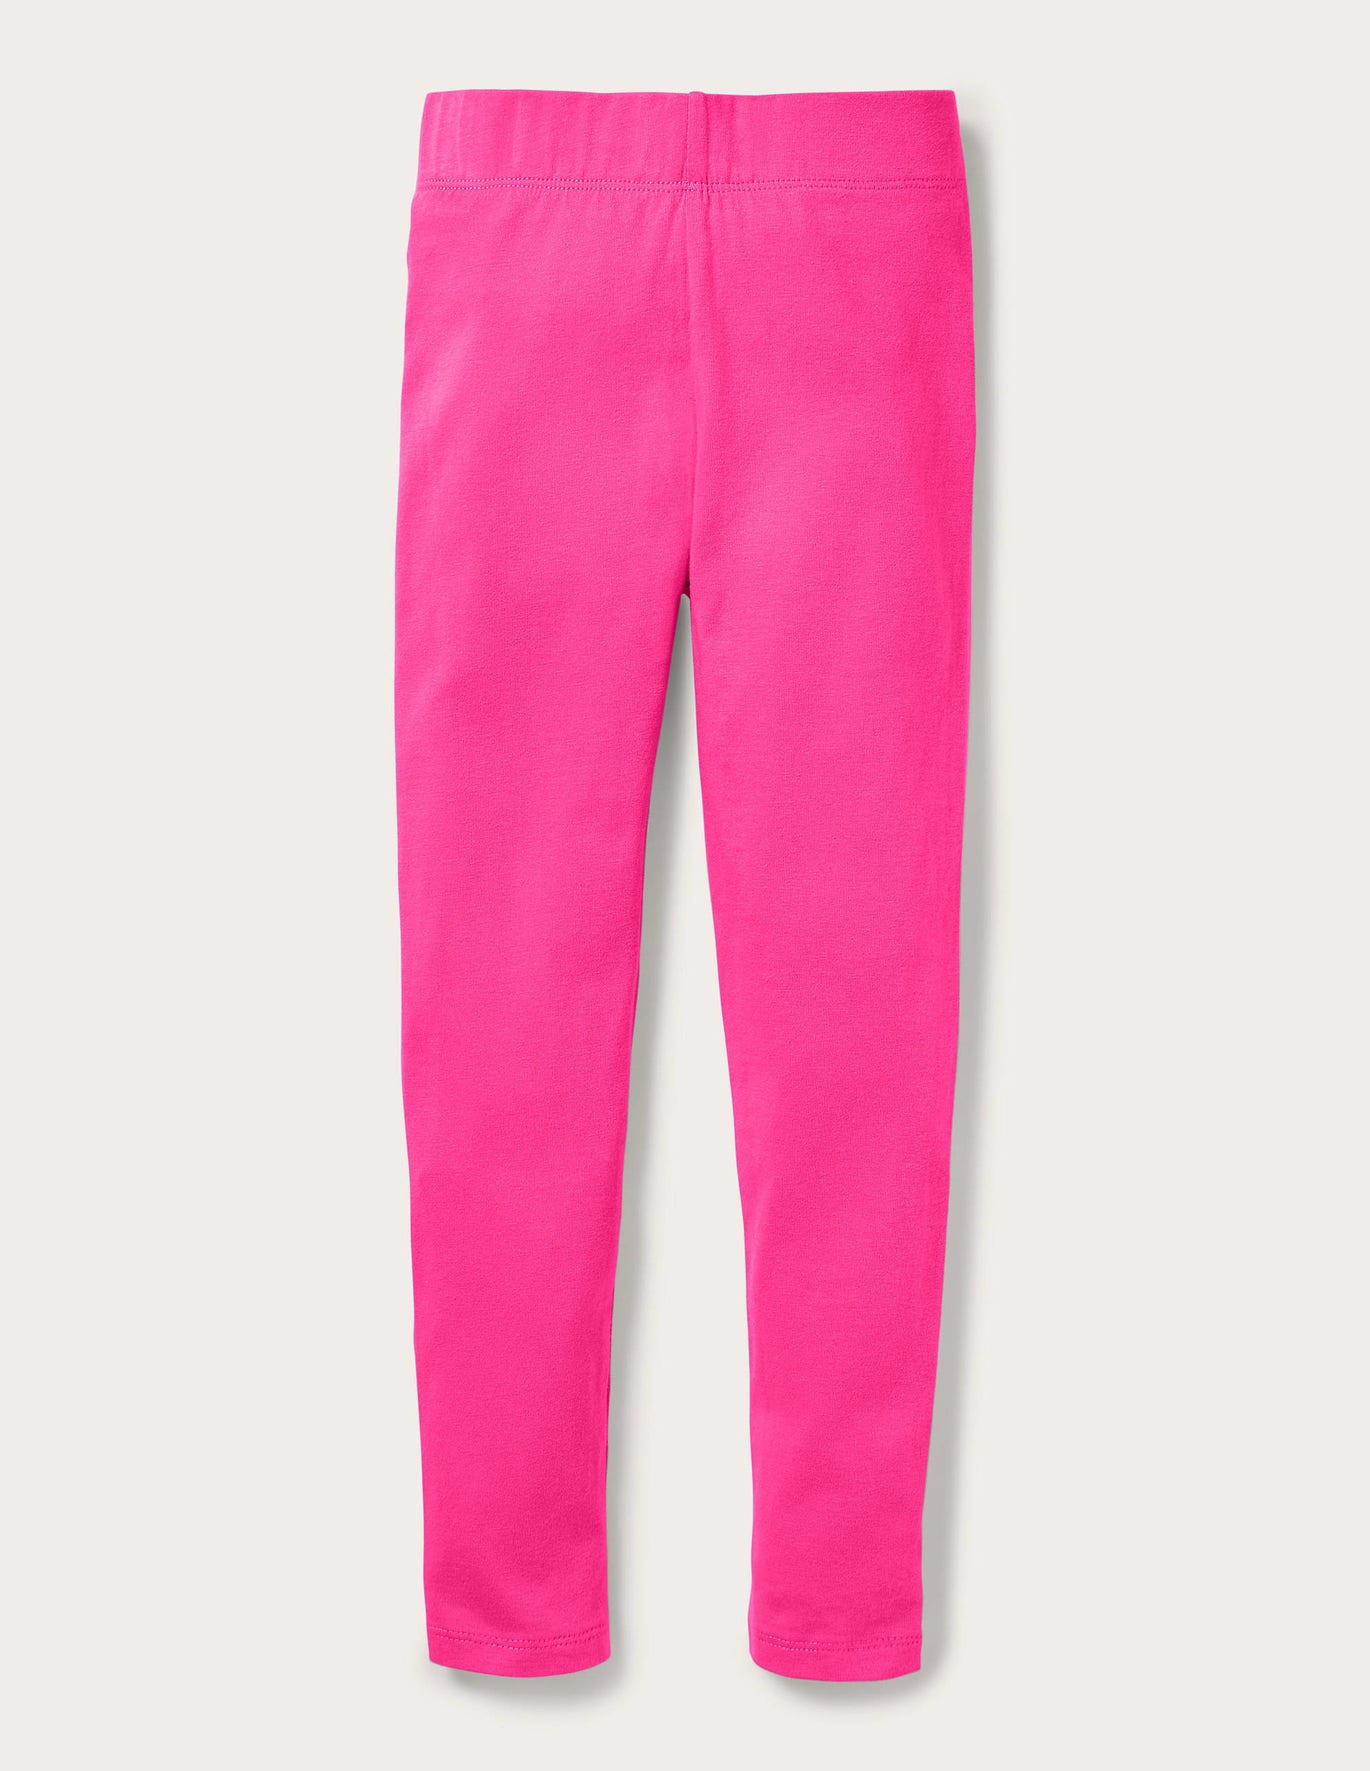 Boden Plain Leggings - Tickled Pink